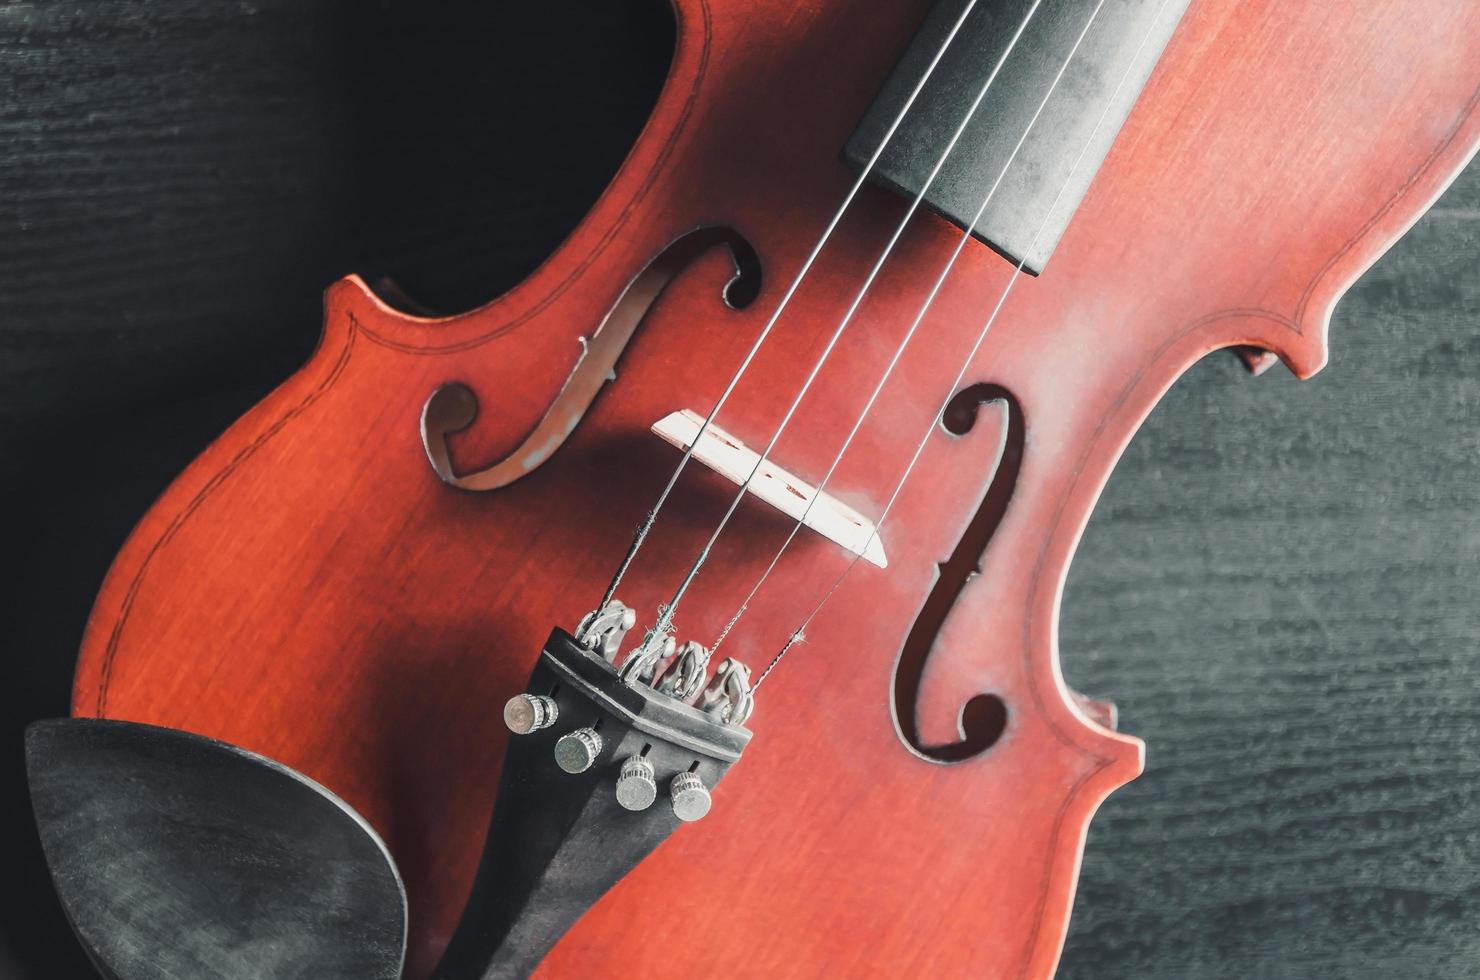 il violino sul tavolo, strumento musicale classico utilizzato nell'orchestra. foto